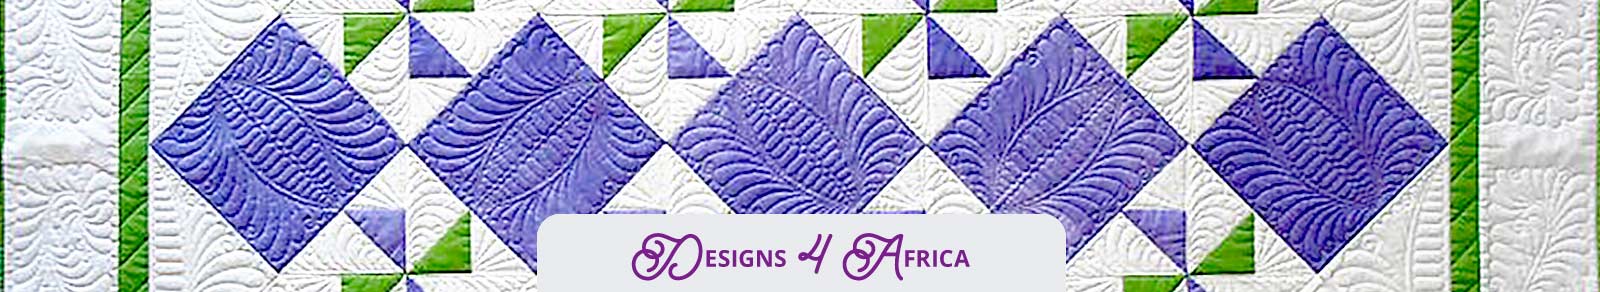 Designs 4 Africa